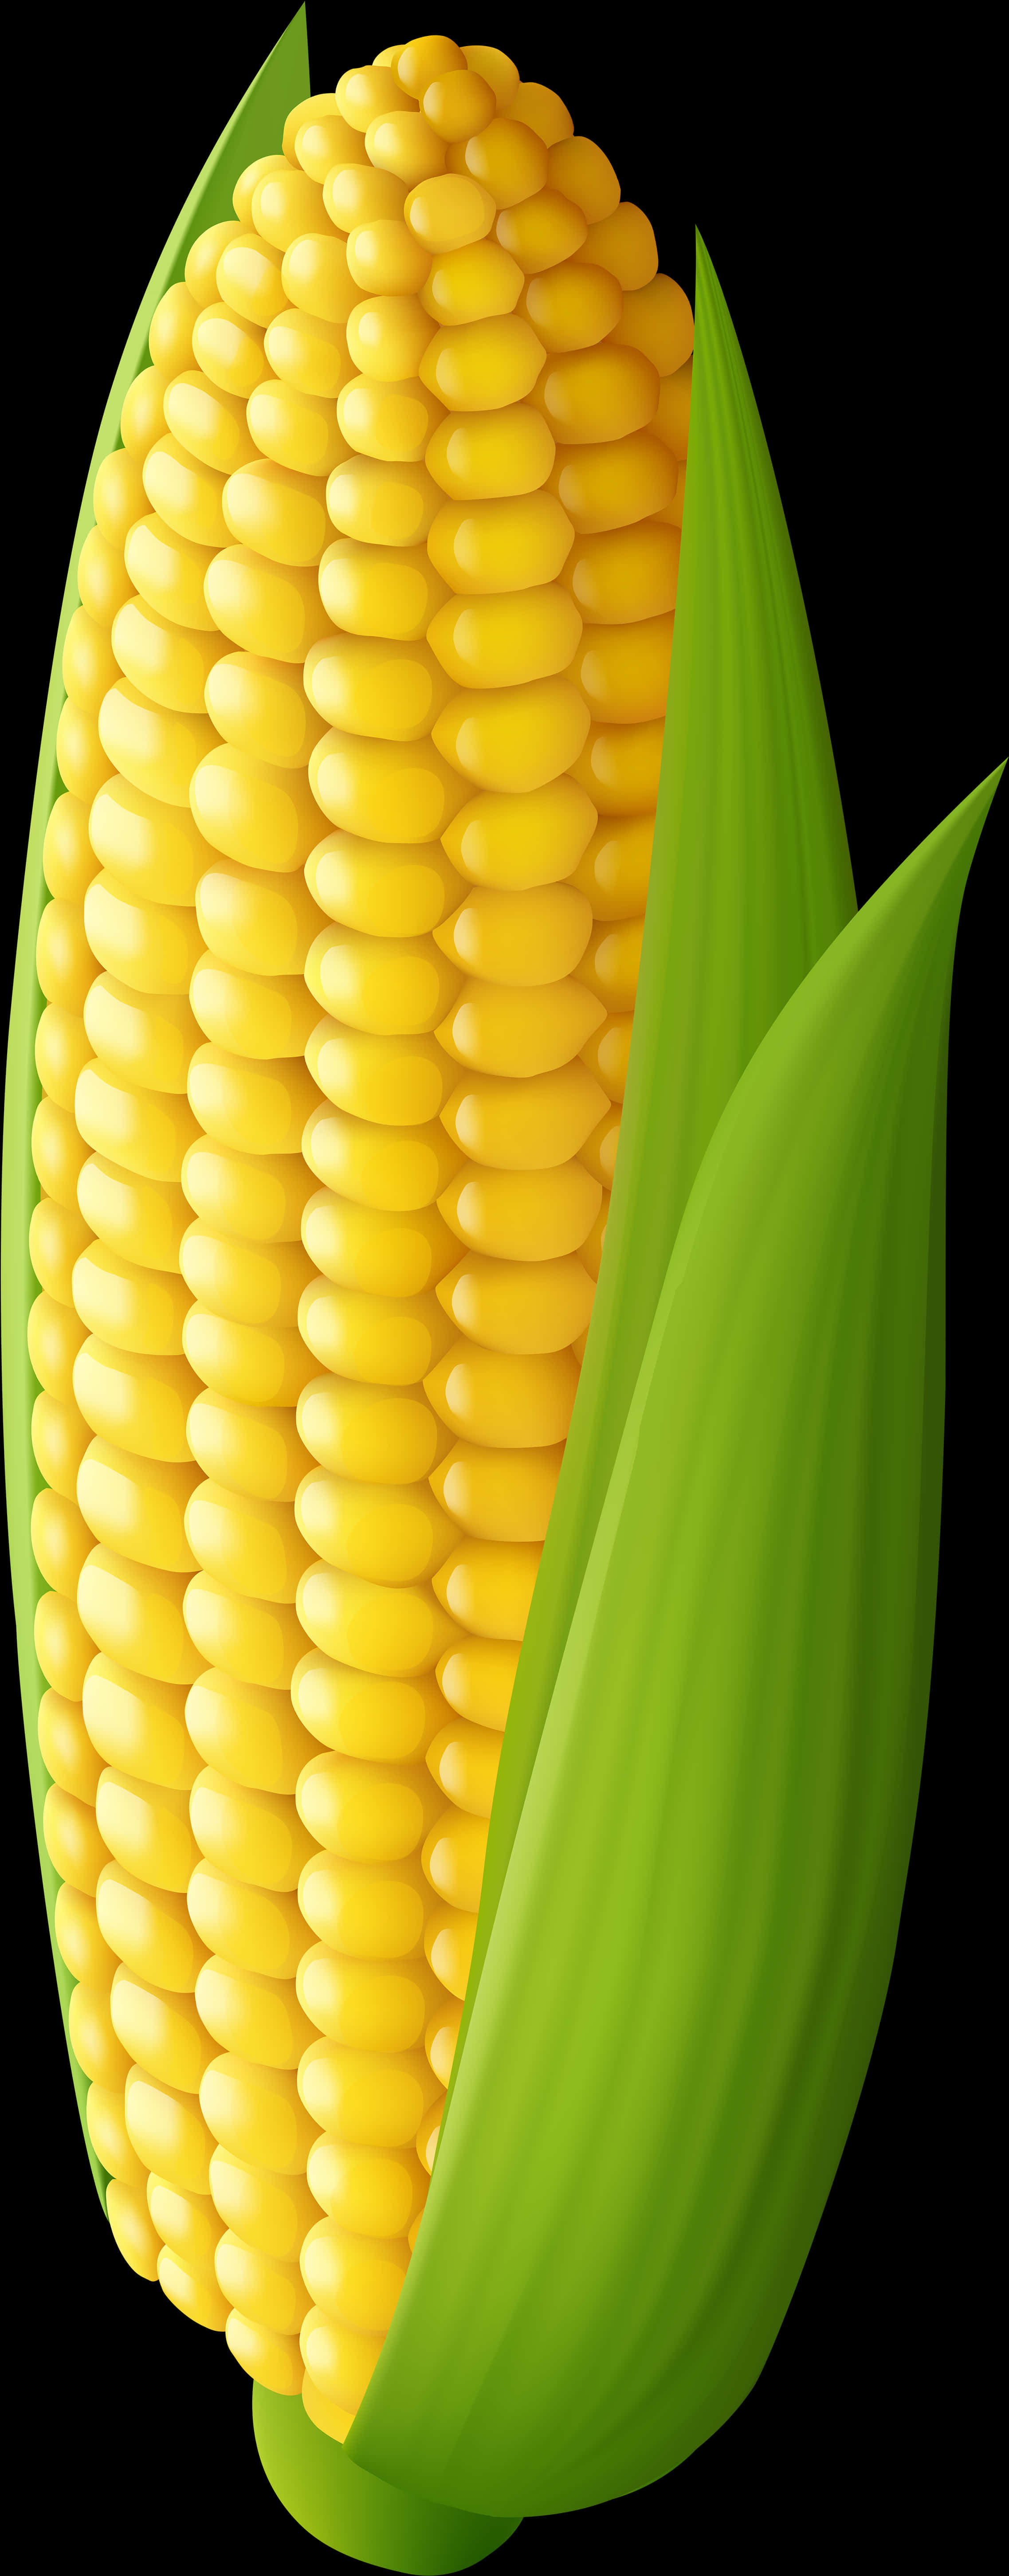 A Close Up Of A Corn Cob